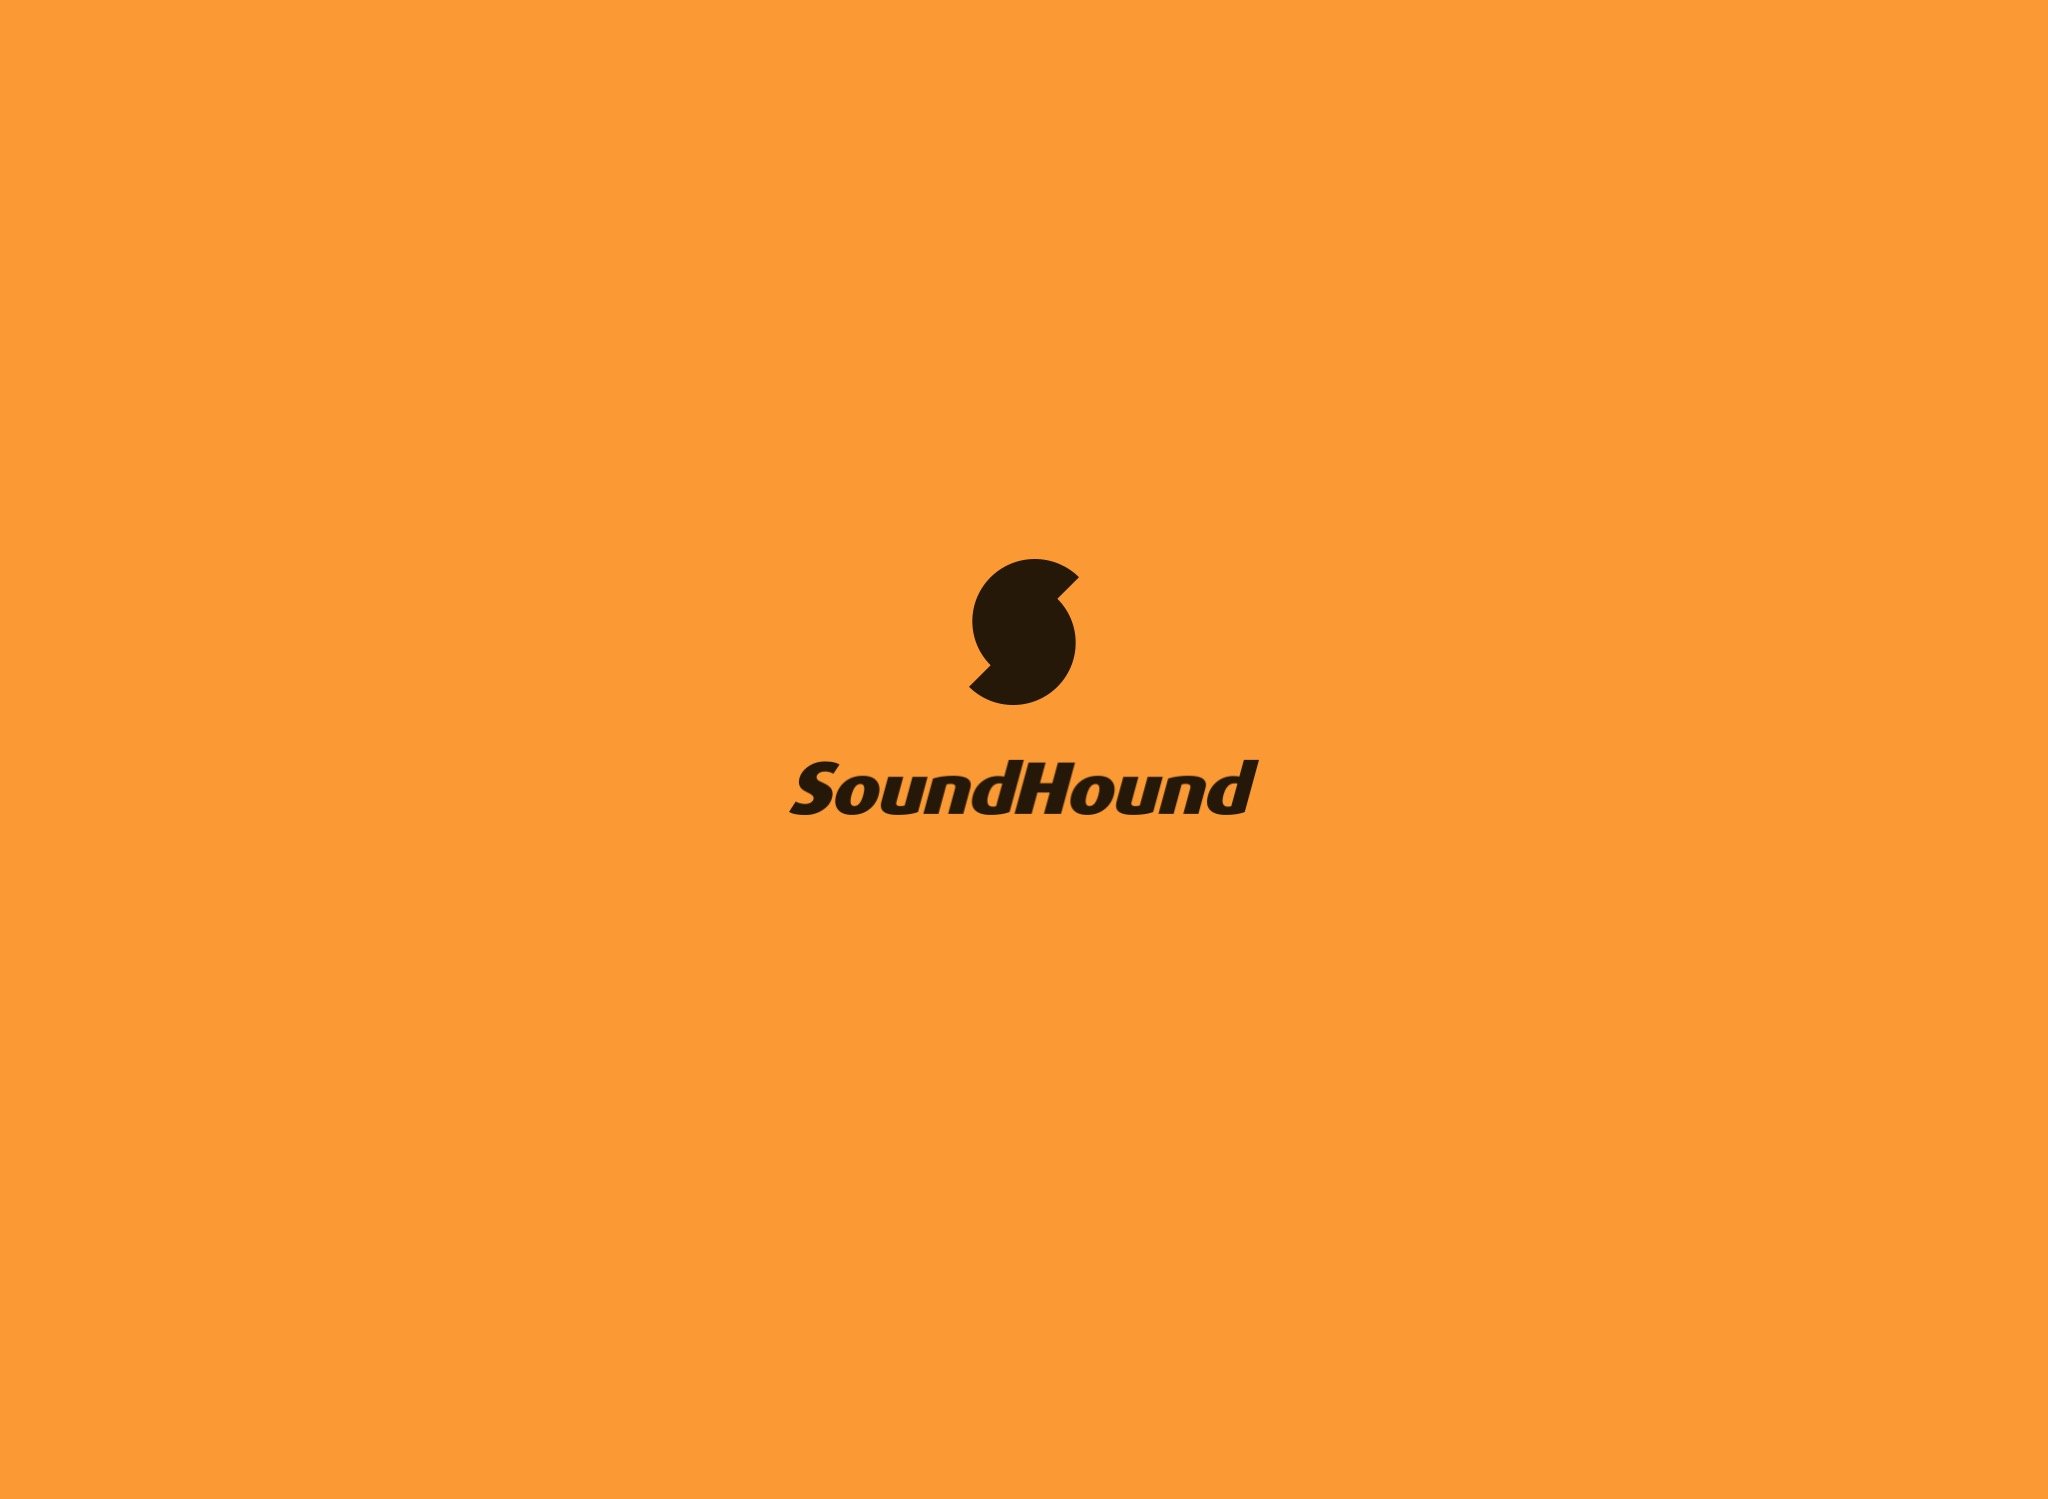 soundhound-calisanlarini-isten-cikariyor-BOeKOnGb.jpg